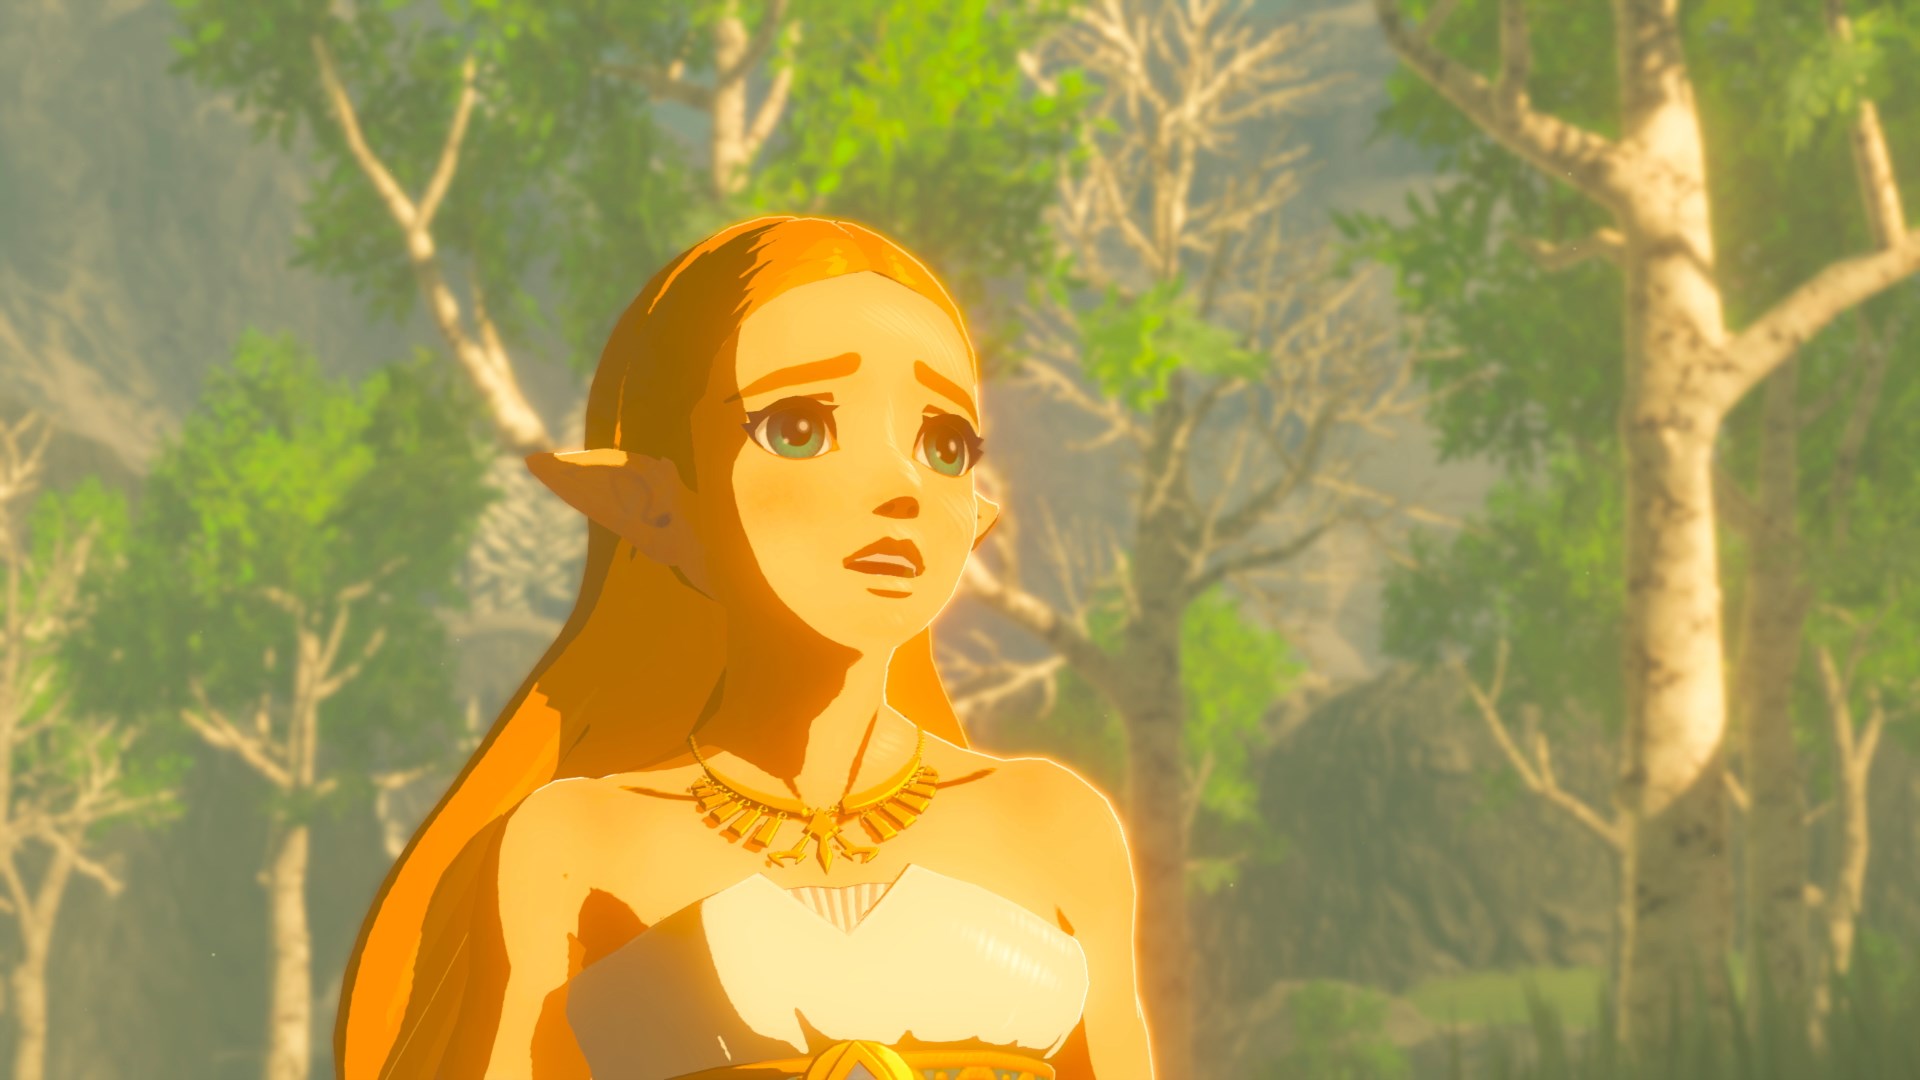 Legend Of Zelda: Breath Of The Wild HD wallpapers, Desktop wallpaper - most viewed